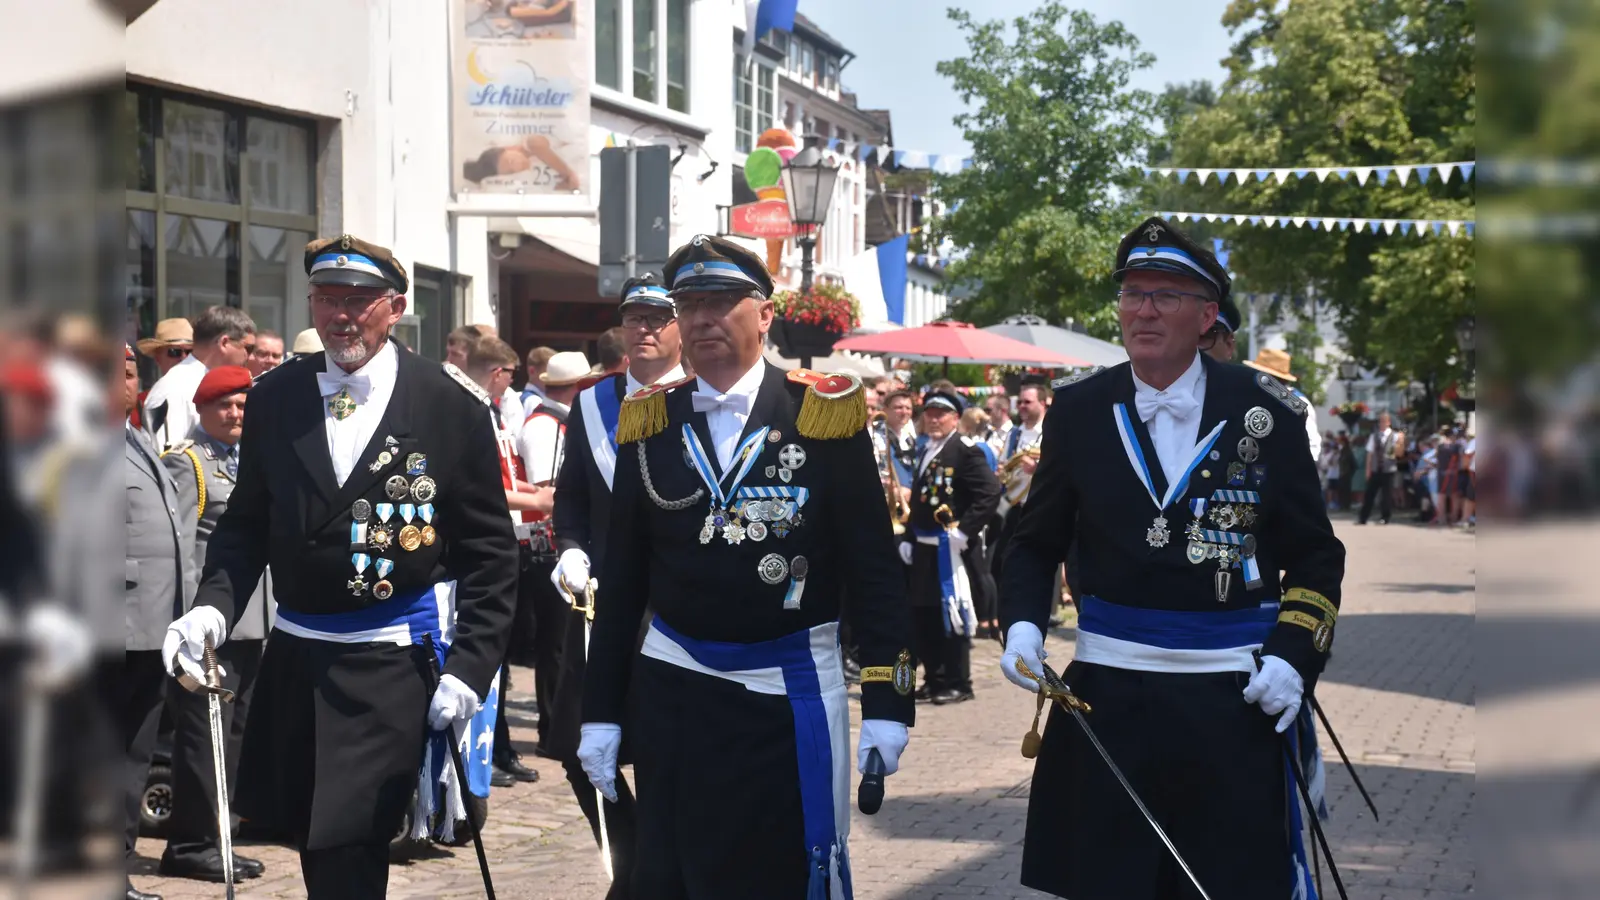 Ehrungen und Parade zu Ehren des Schützenkönigspaares (Foto: Barbara Siebrecht)